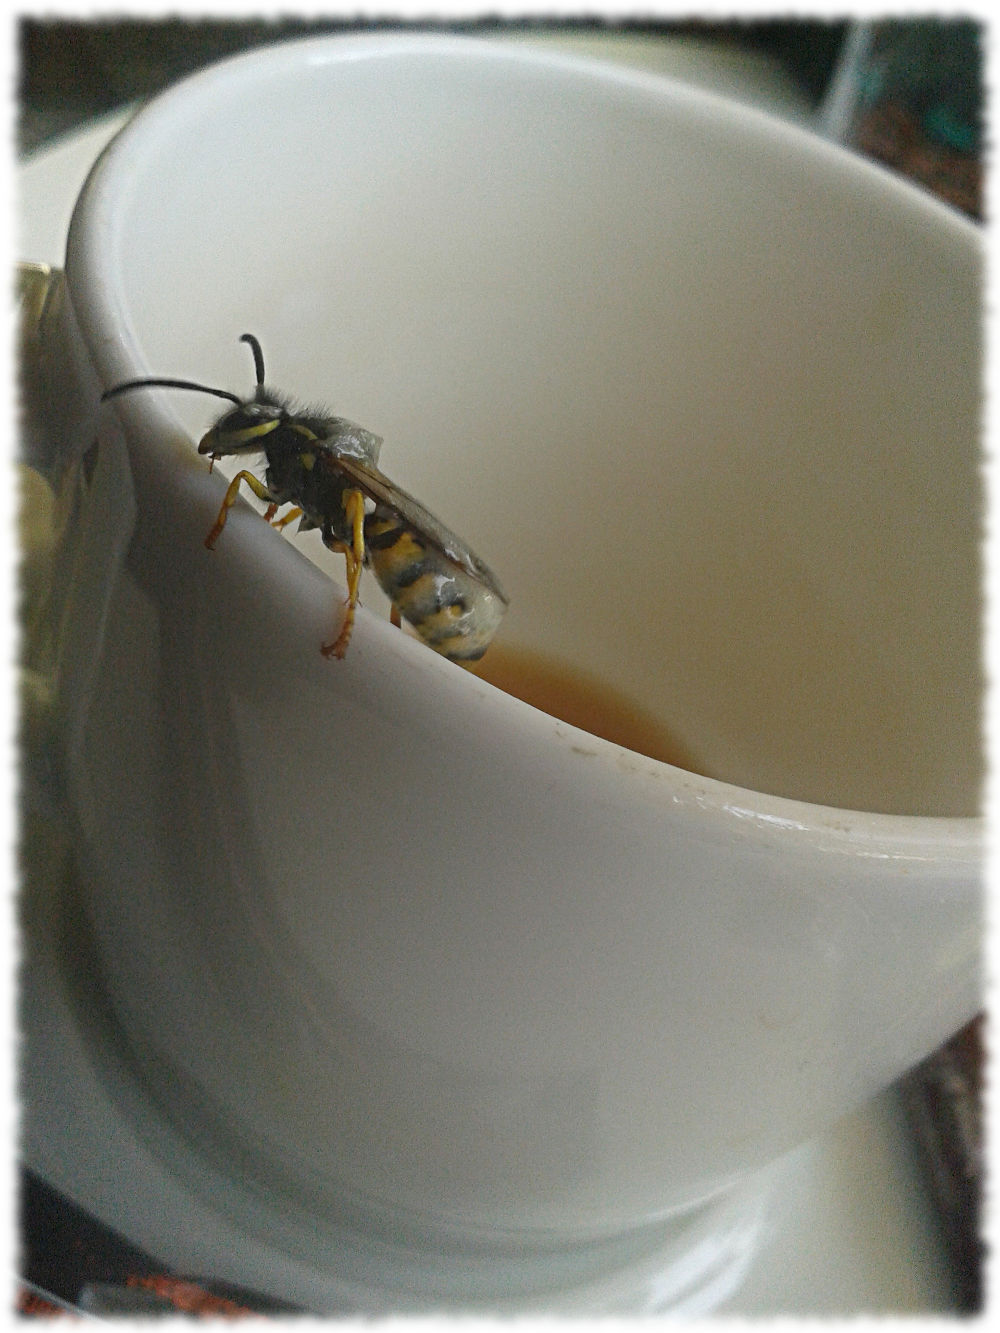 Mit Eiscrme verschmierte Wespe auf dem Rand einer Kaffeetasse.